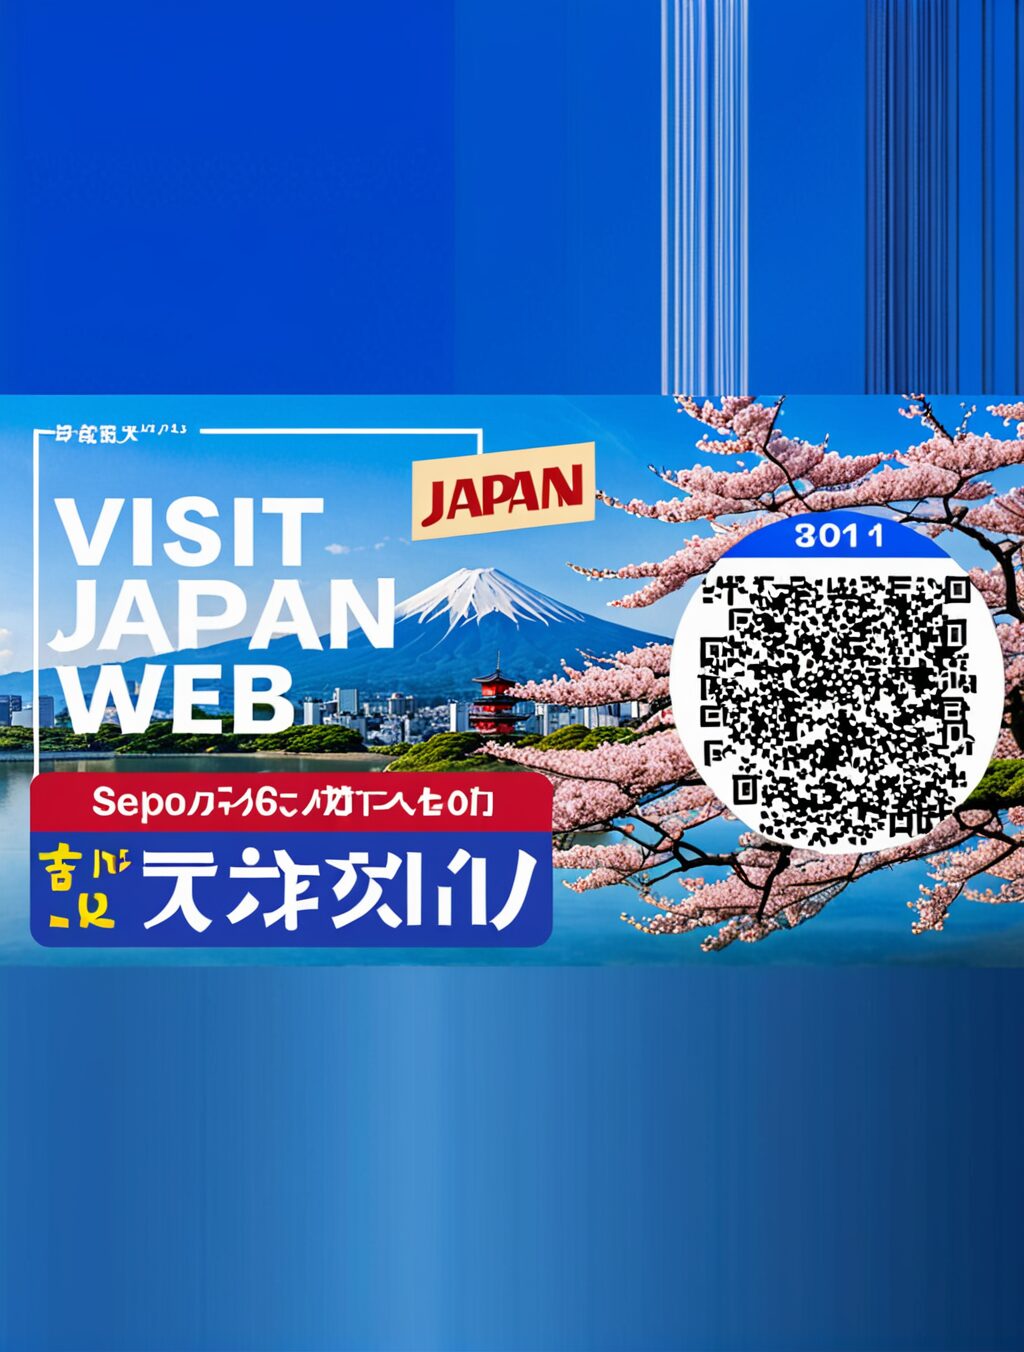 visit japan web ログイン方法